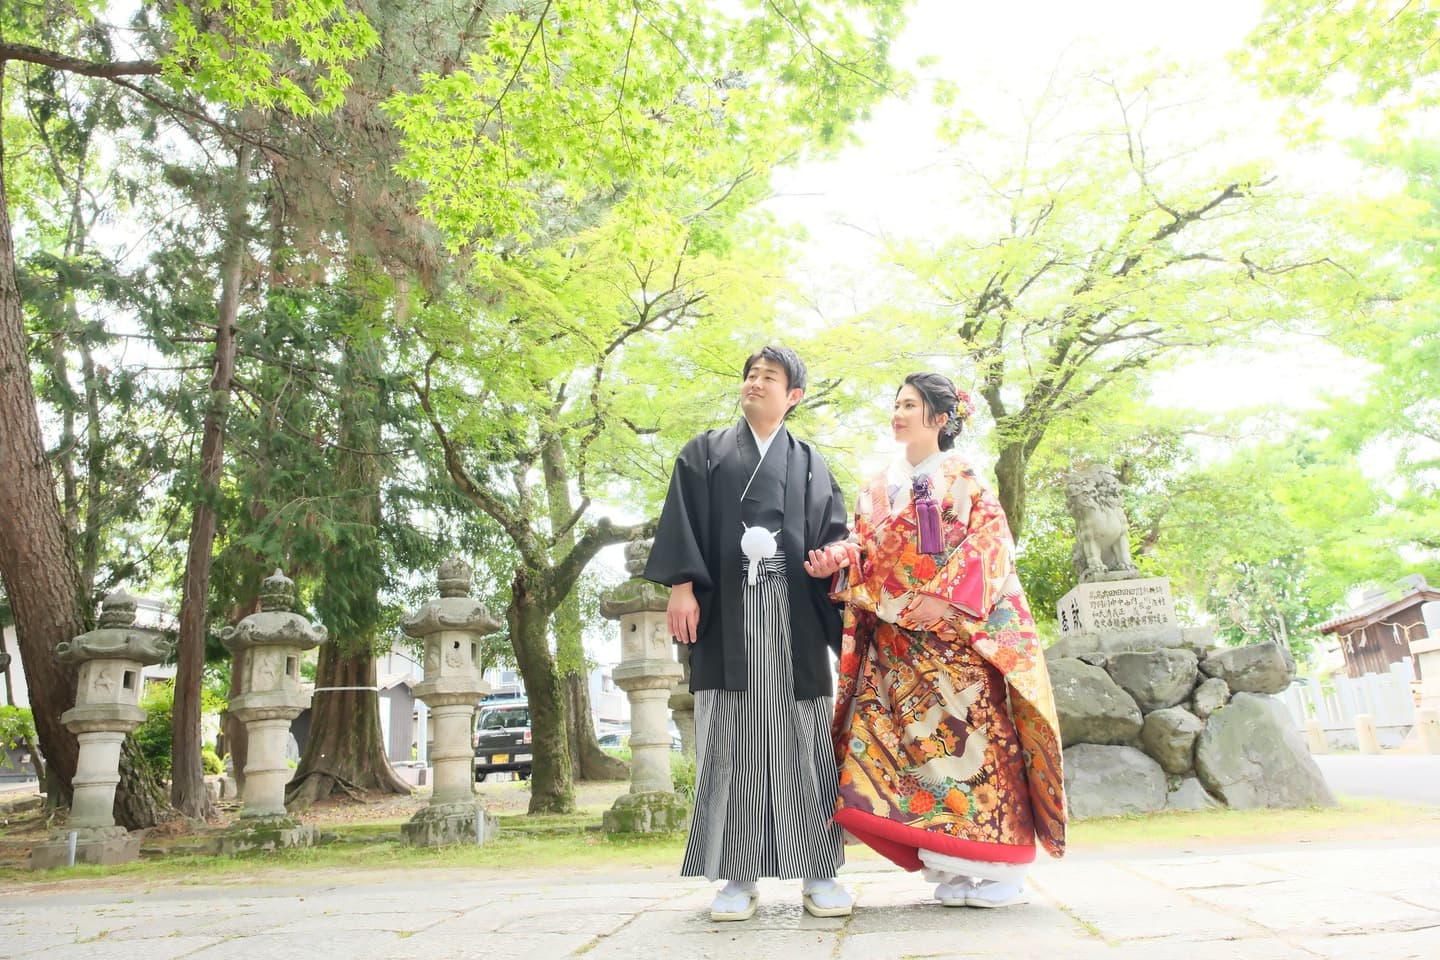 立木神社での結婚式の写真